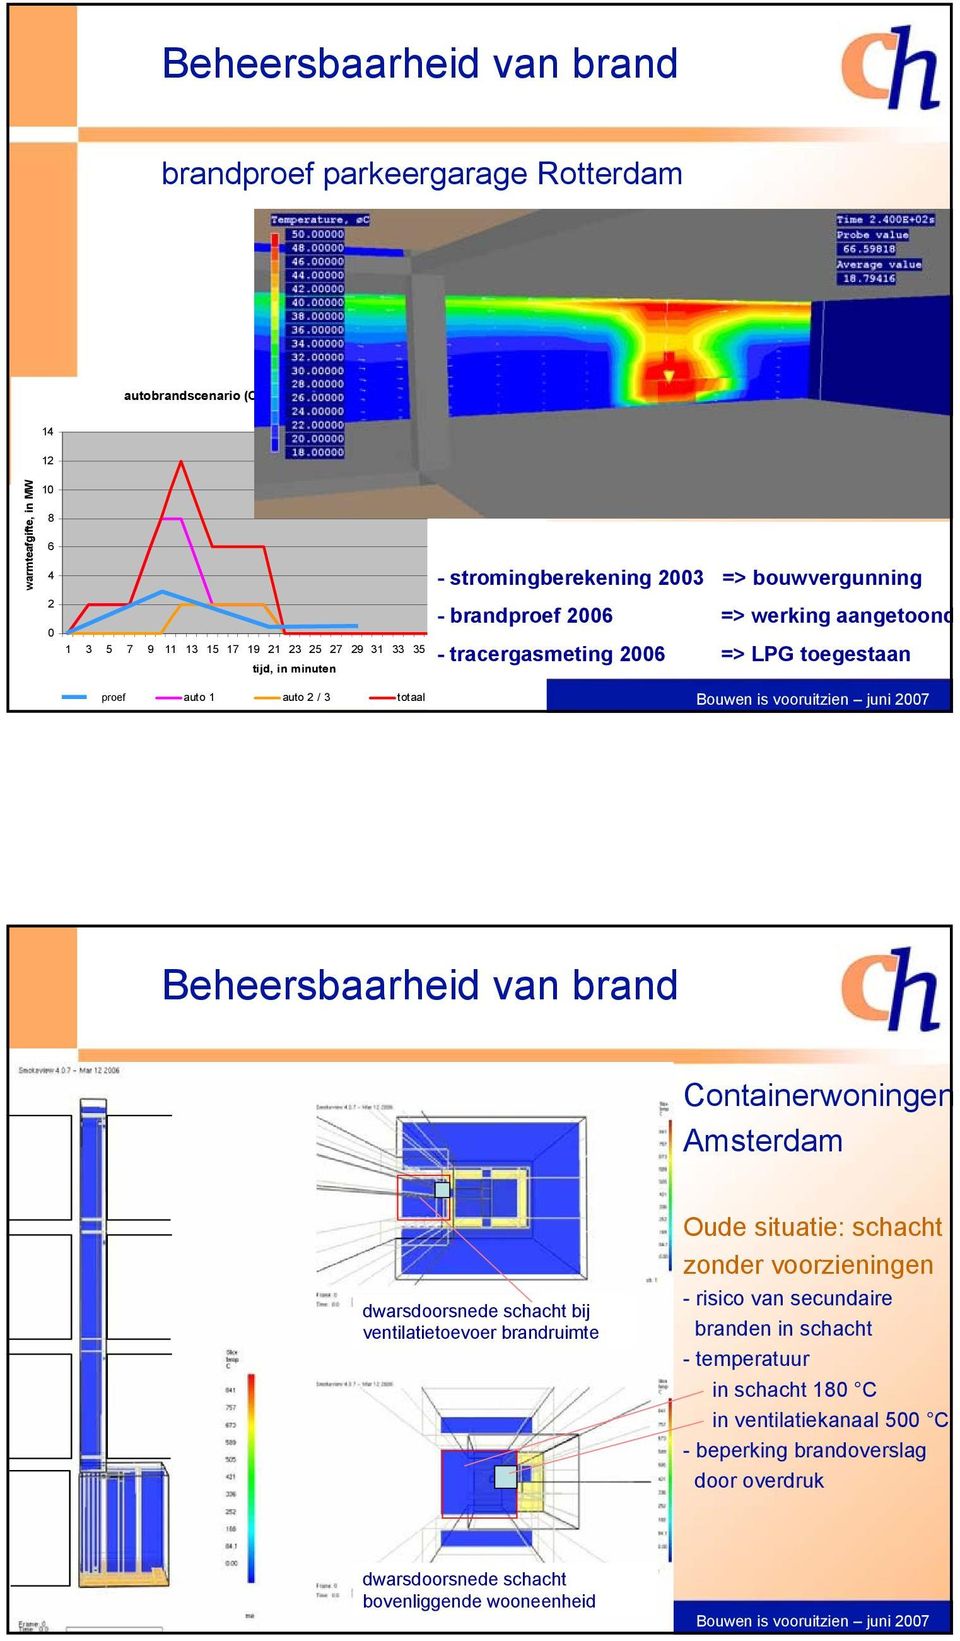 1 auto 2 / 3 totaal Beheersbaarheid van brand Containerwoningen Amsterdam dwarsdoorsnede schacht bij ventilatietoevoer brandruimte Oude situatie: schacht zonder voorzieningen -